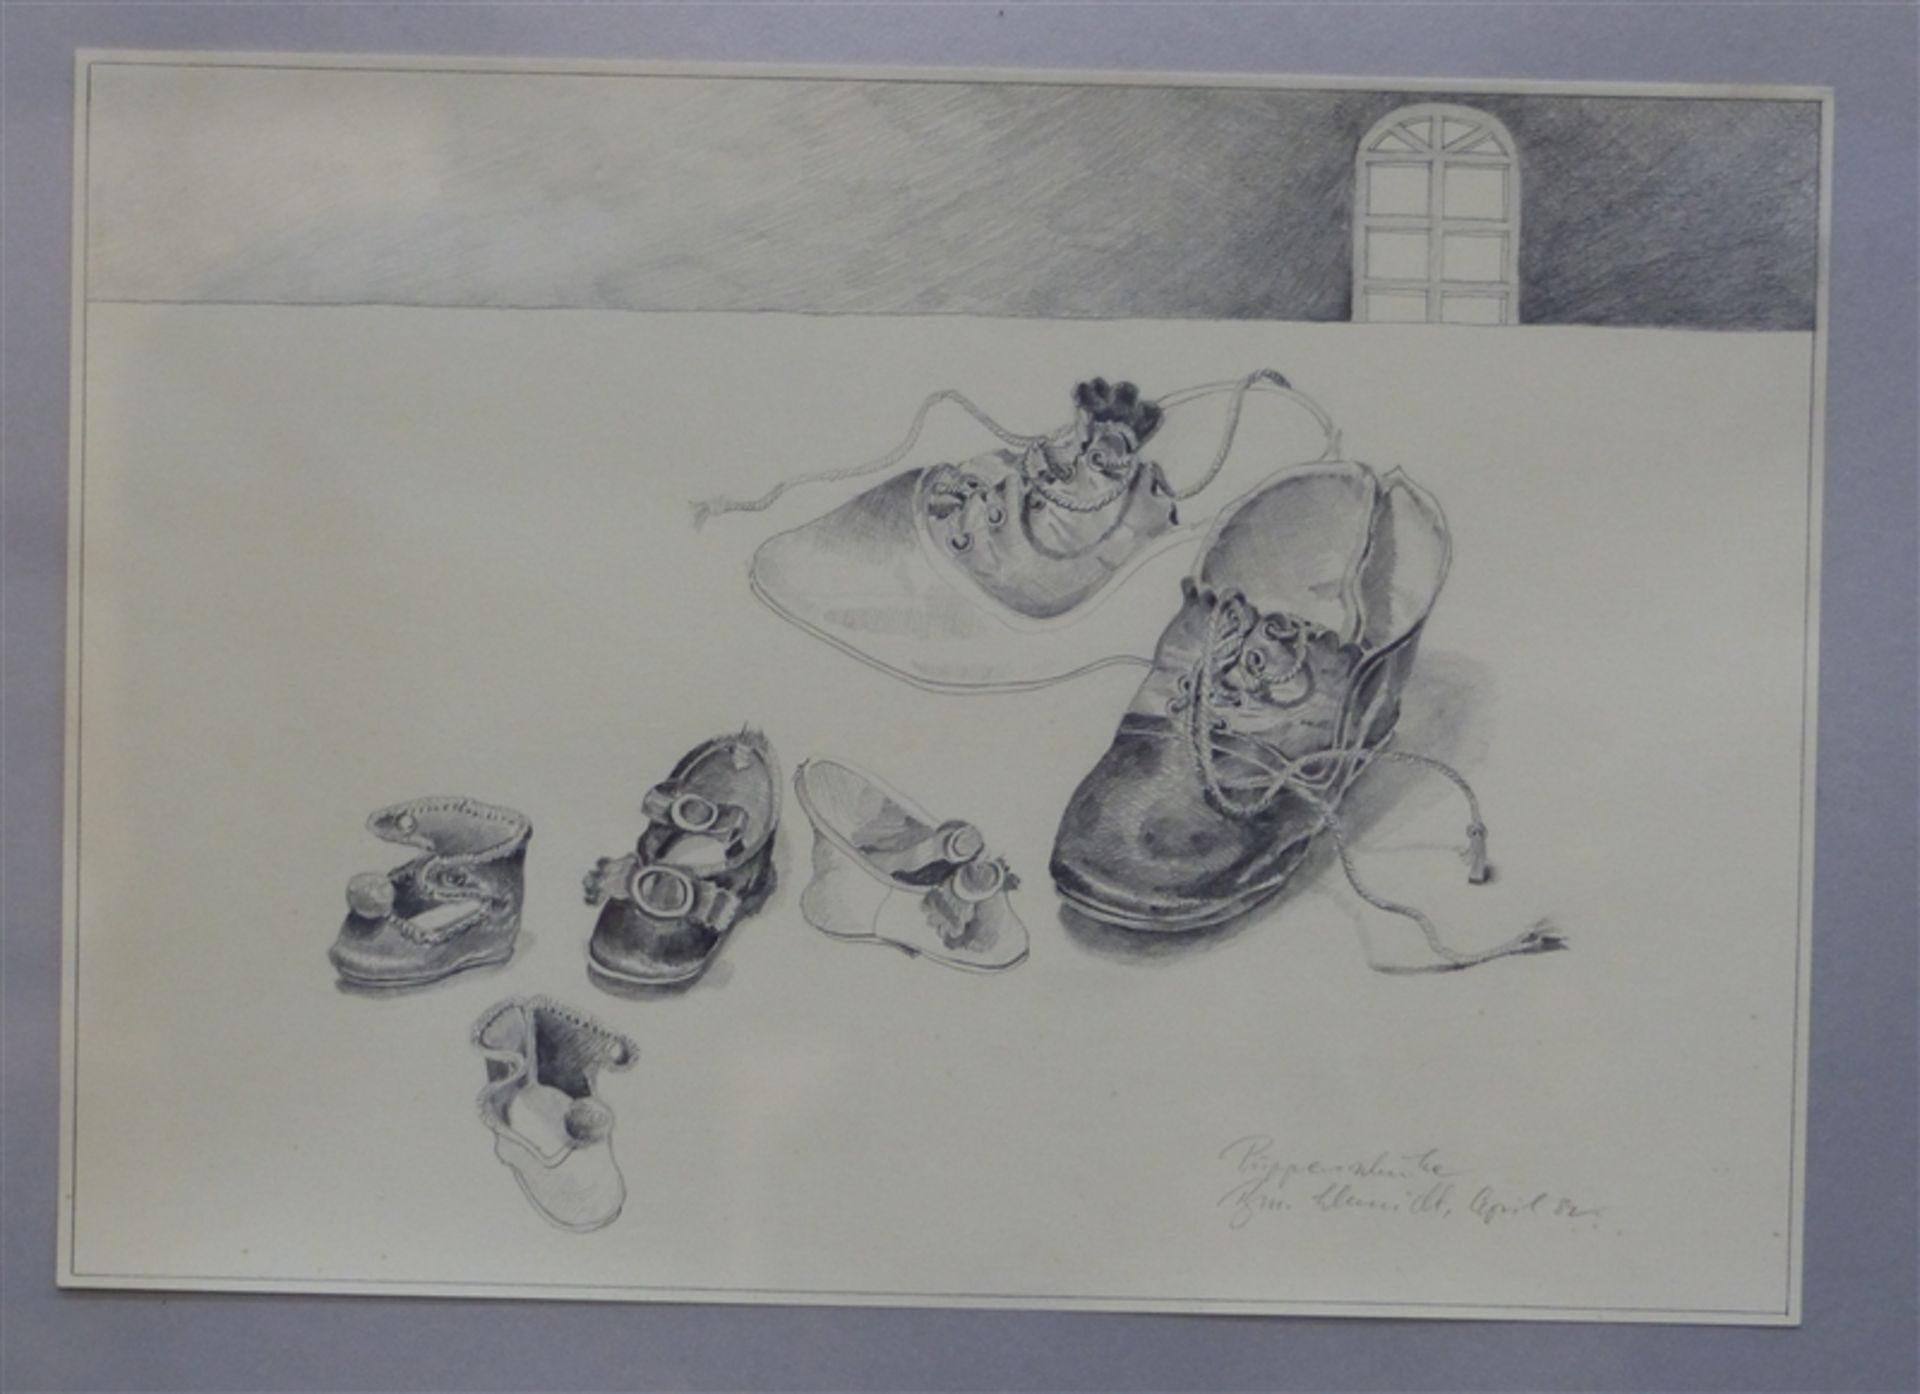 Schmidt, B. Tuschzeichnung, Stilleben von Einzelschuhen, betitelt "Puppenschuhe", rechts unten